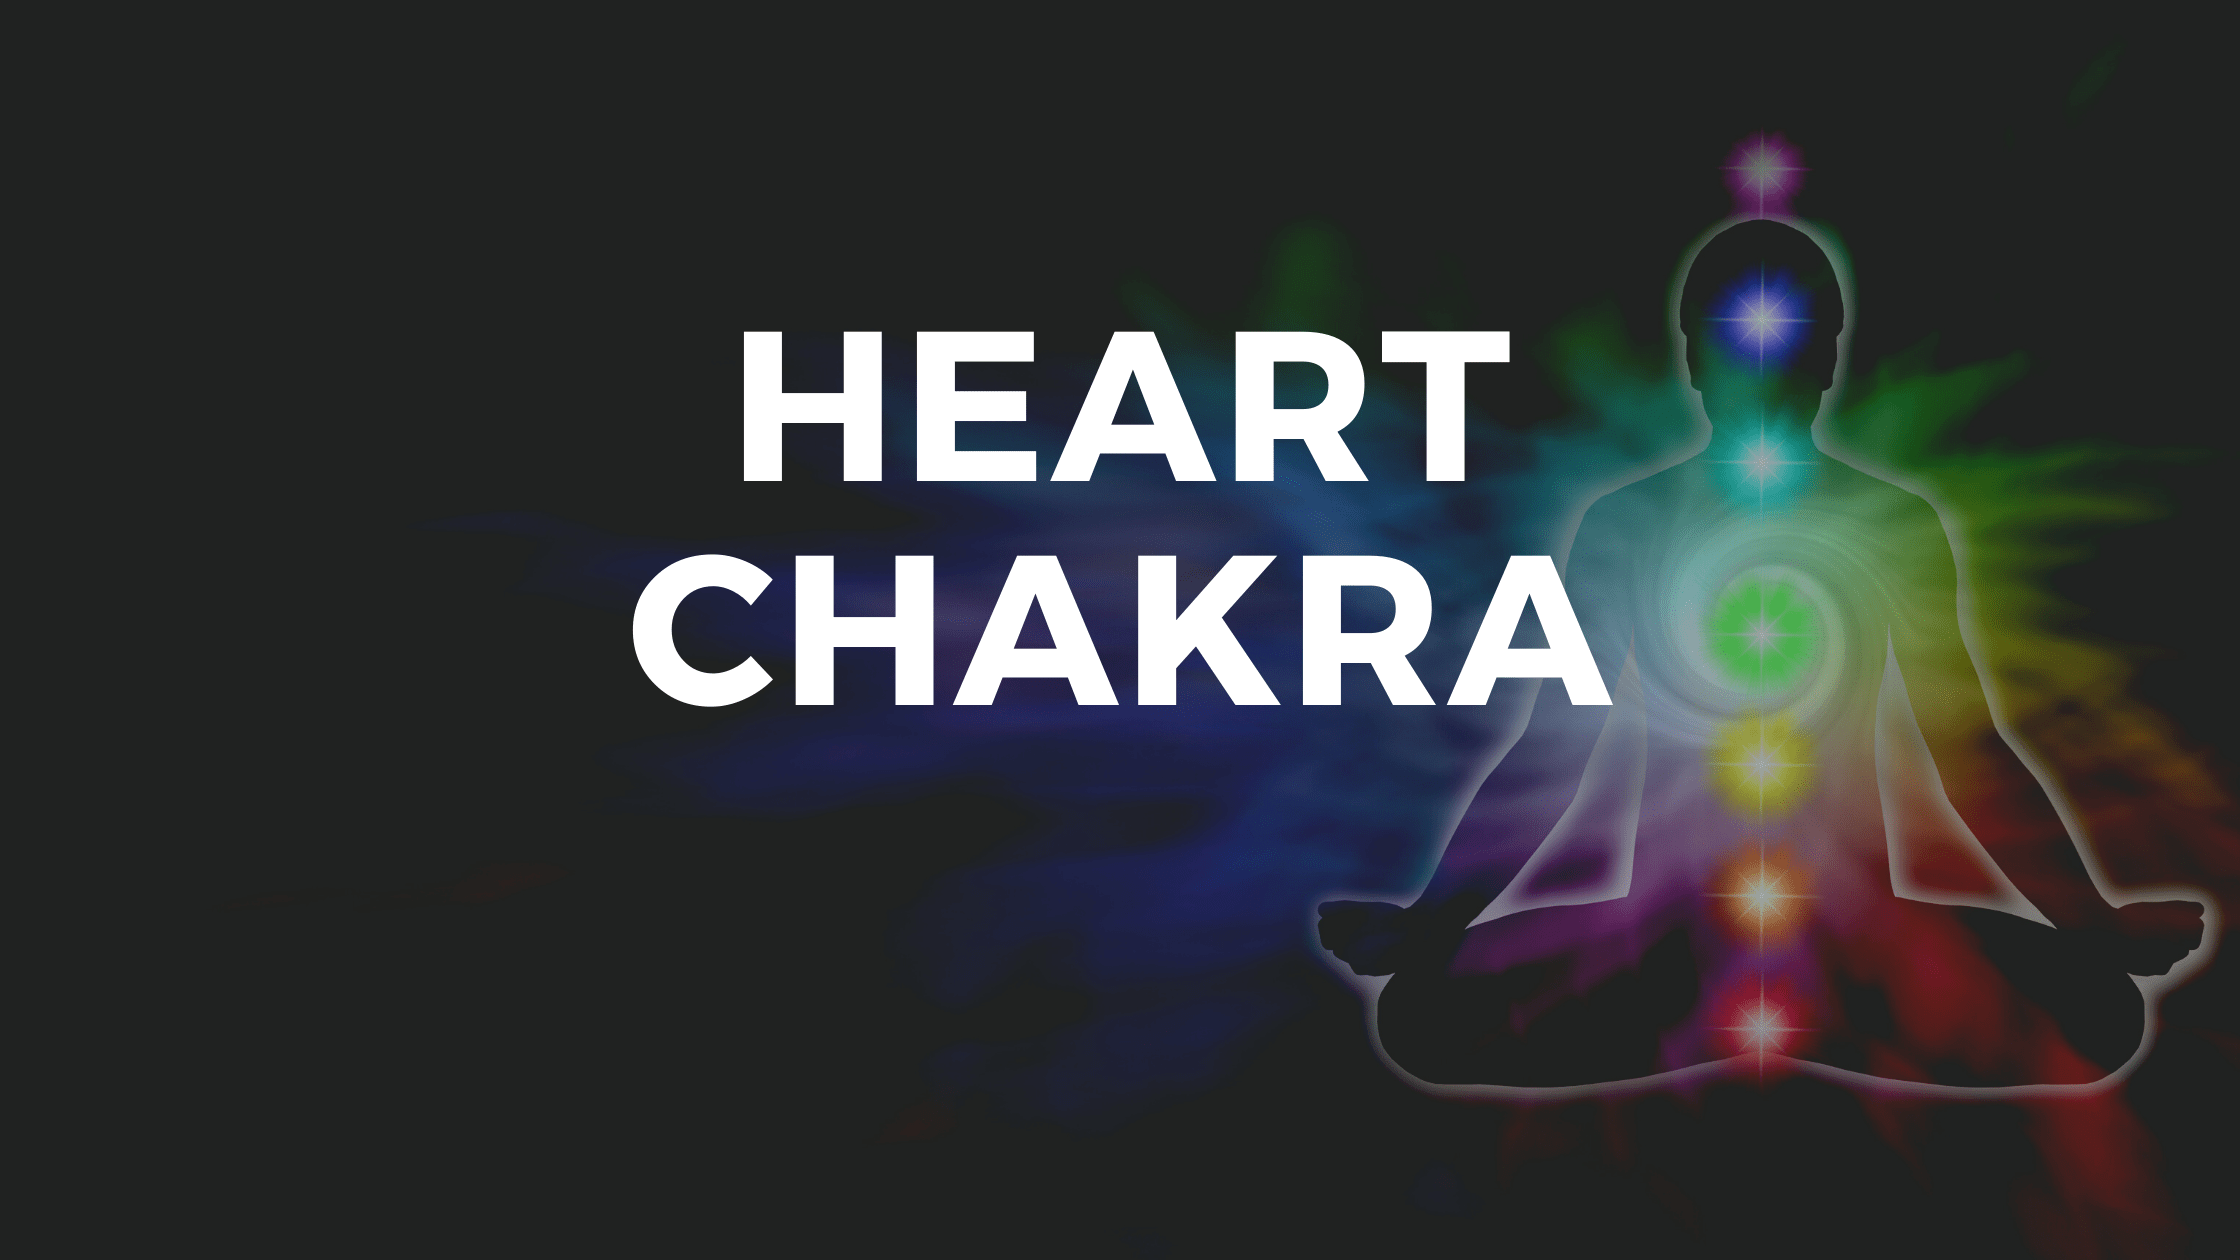 Heart Chakra